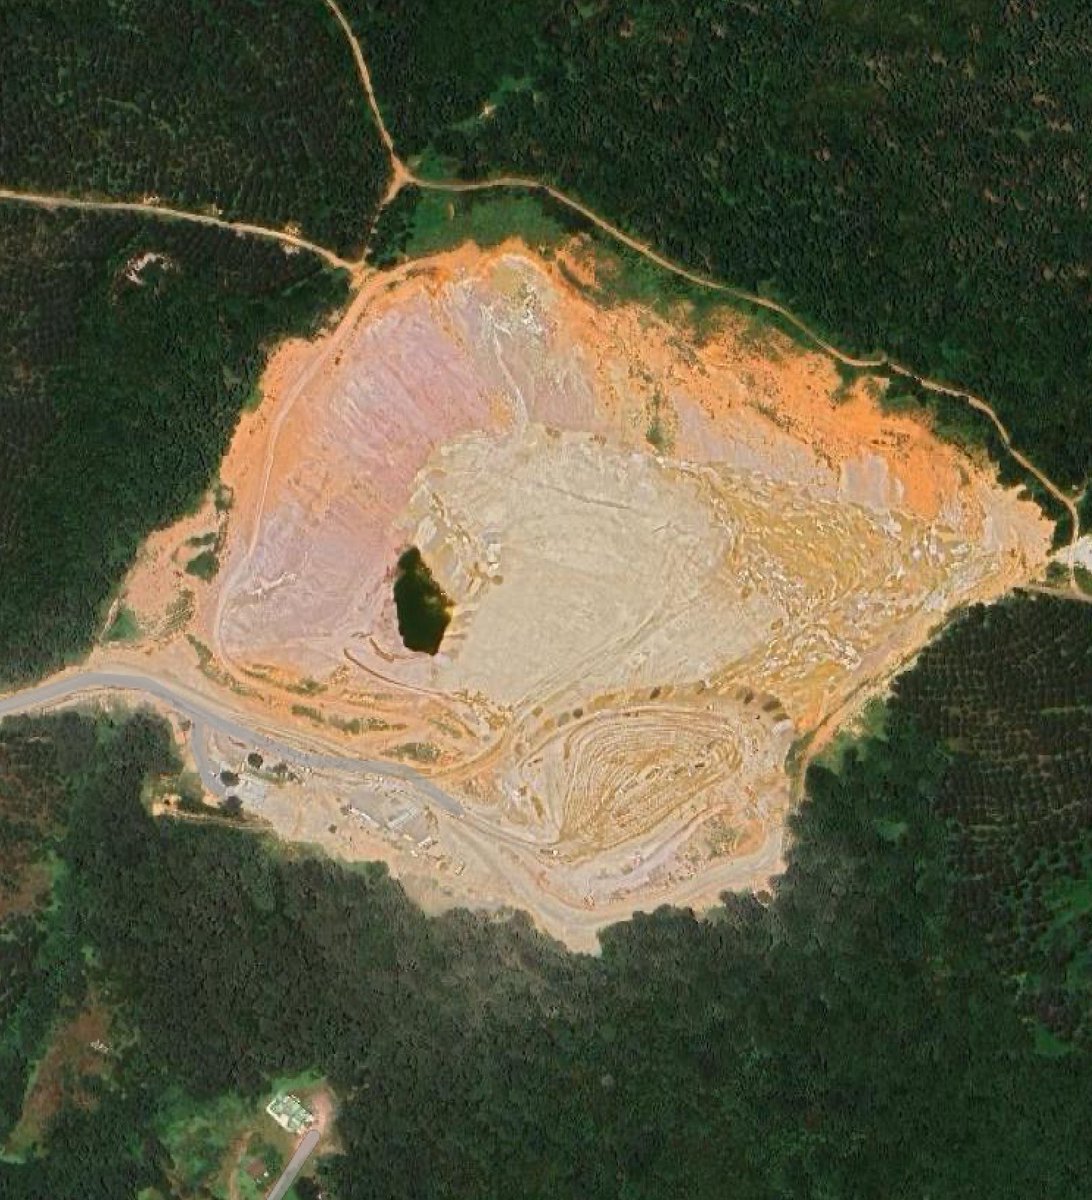 Bir ormanın yıllar içerisinde yok edilişi…

Tuzla Akfırat’da bulunan ormanlık alanın tam ortasına yaklaşık 10 yıl önce yüzlerce ağacın kesilerek açıldığı hafriyat sahası, hala faaliyetlerine aralıksız olarak devam ediyor.

İstanbul Anadolu Yakasının tek hafriyat sahası olarak